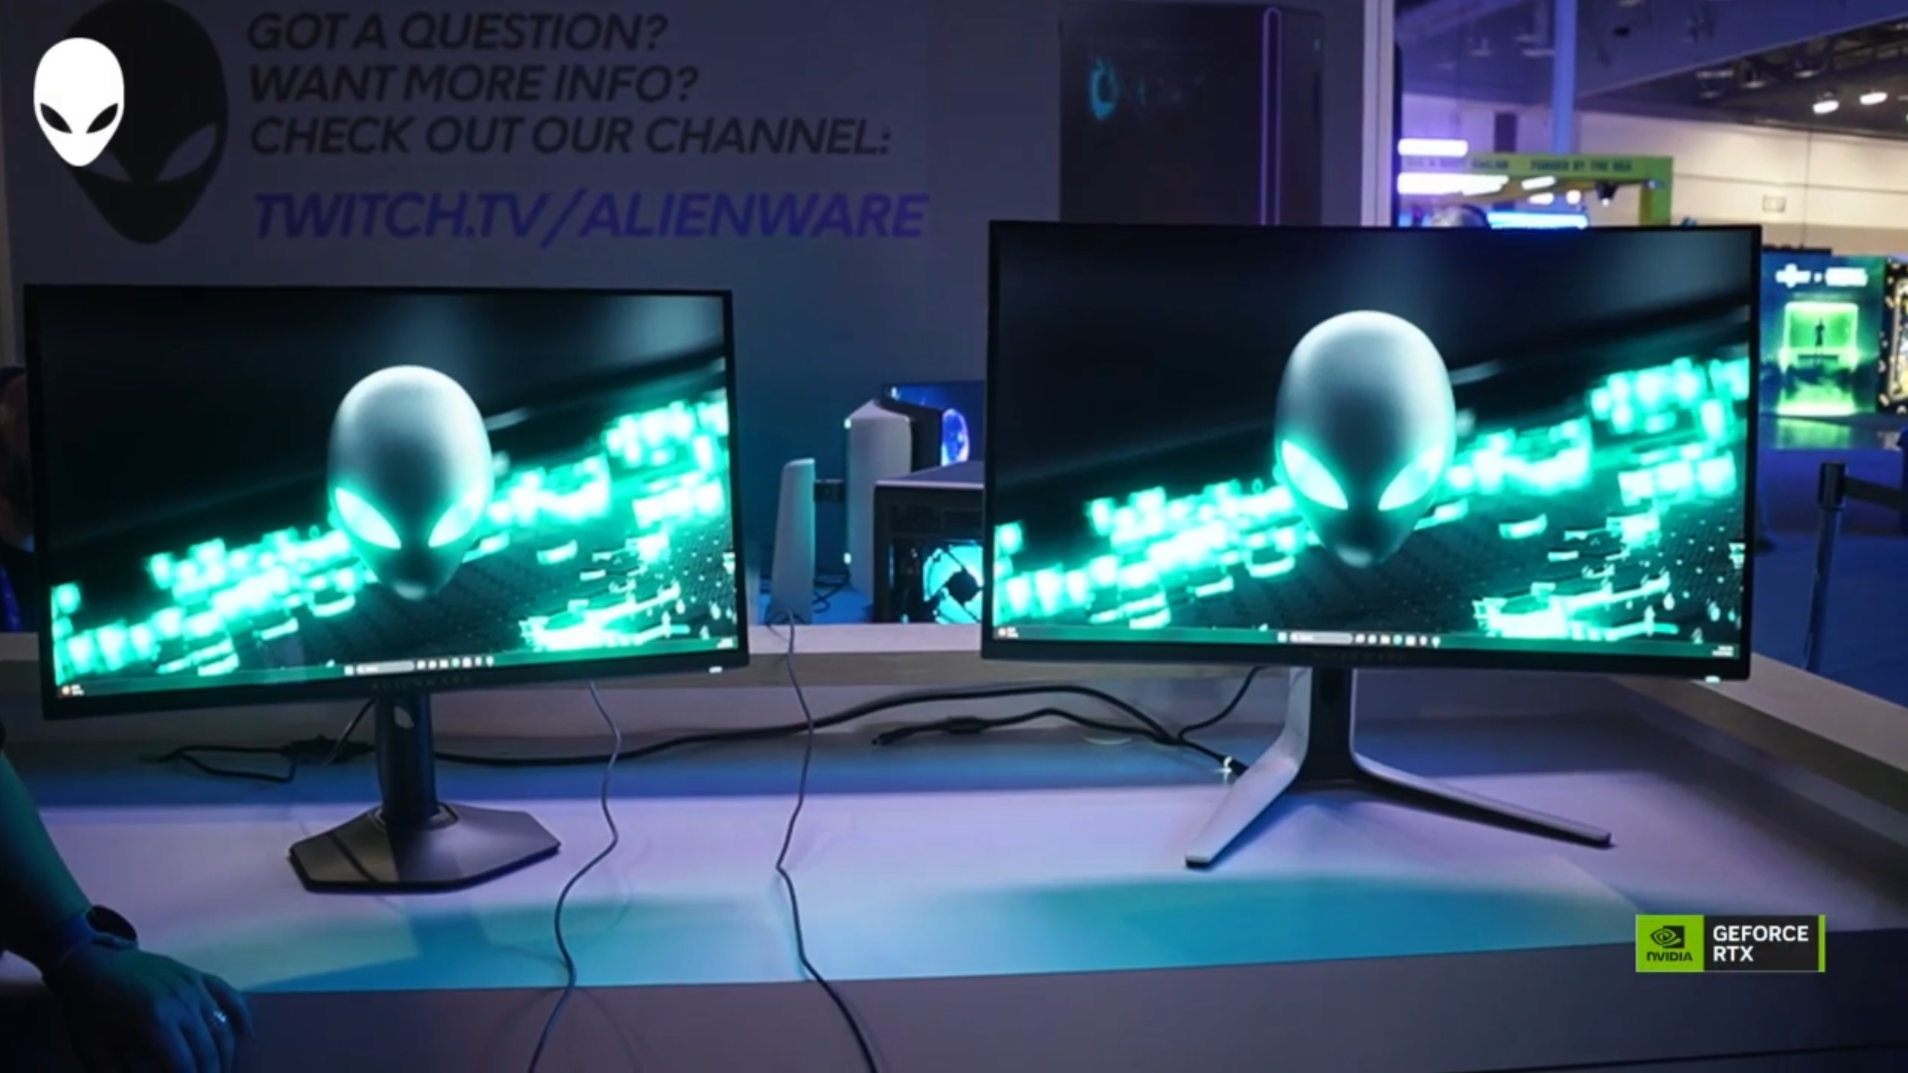 Alienware revela monitores QD-OLED 4K e QHD com 360Hz